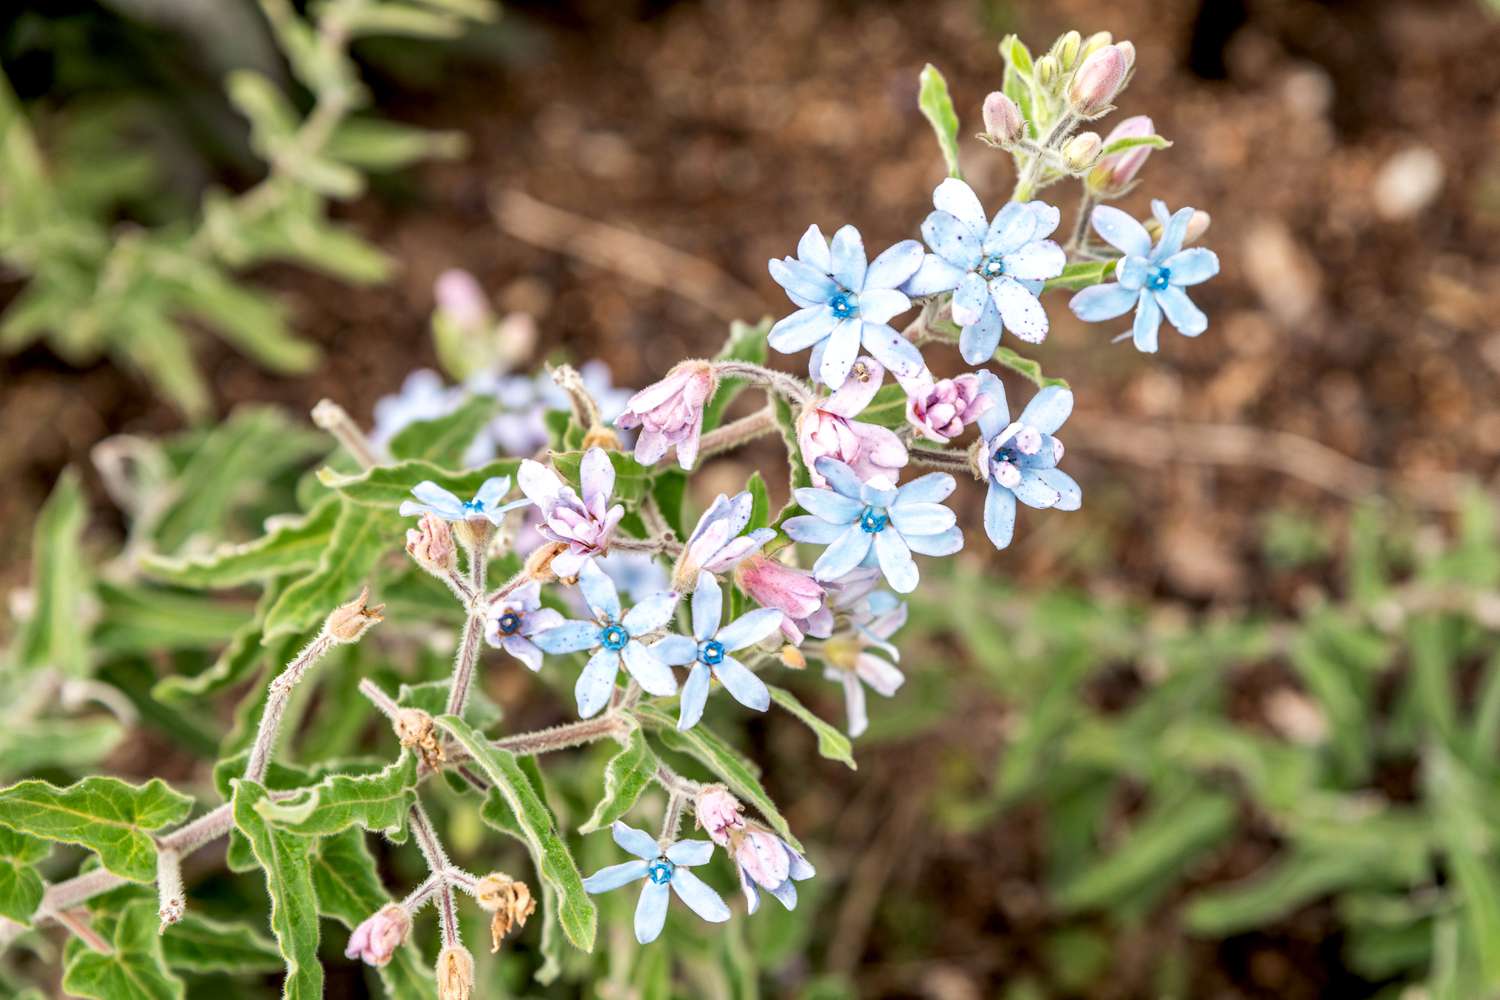 Planta de tweedia con flores y capullos azul claro y morado